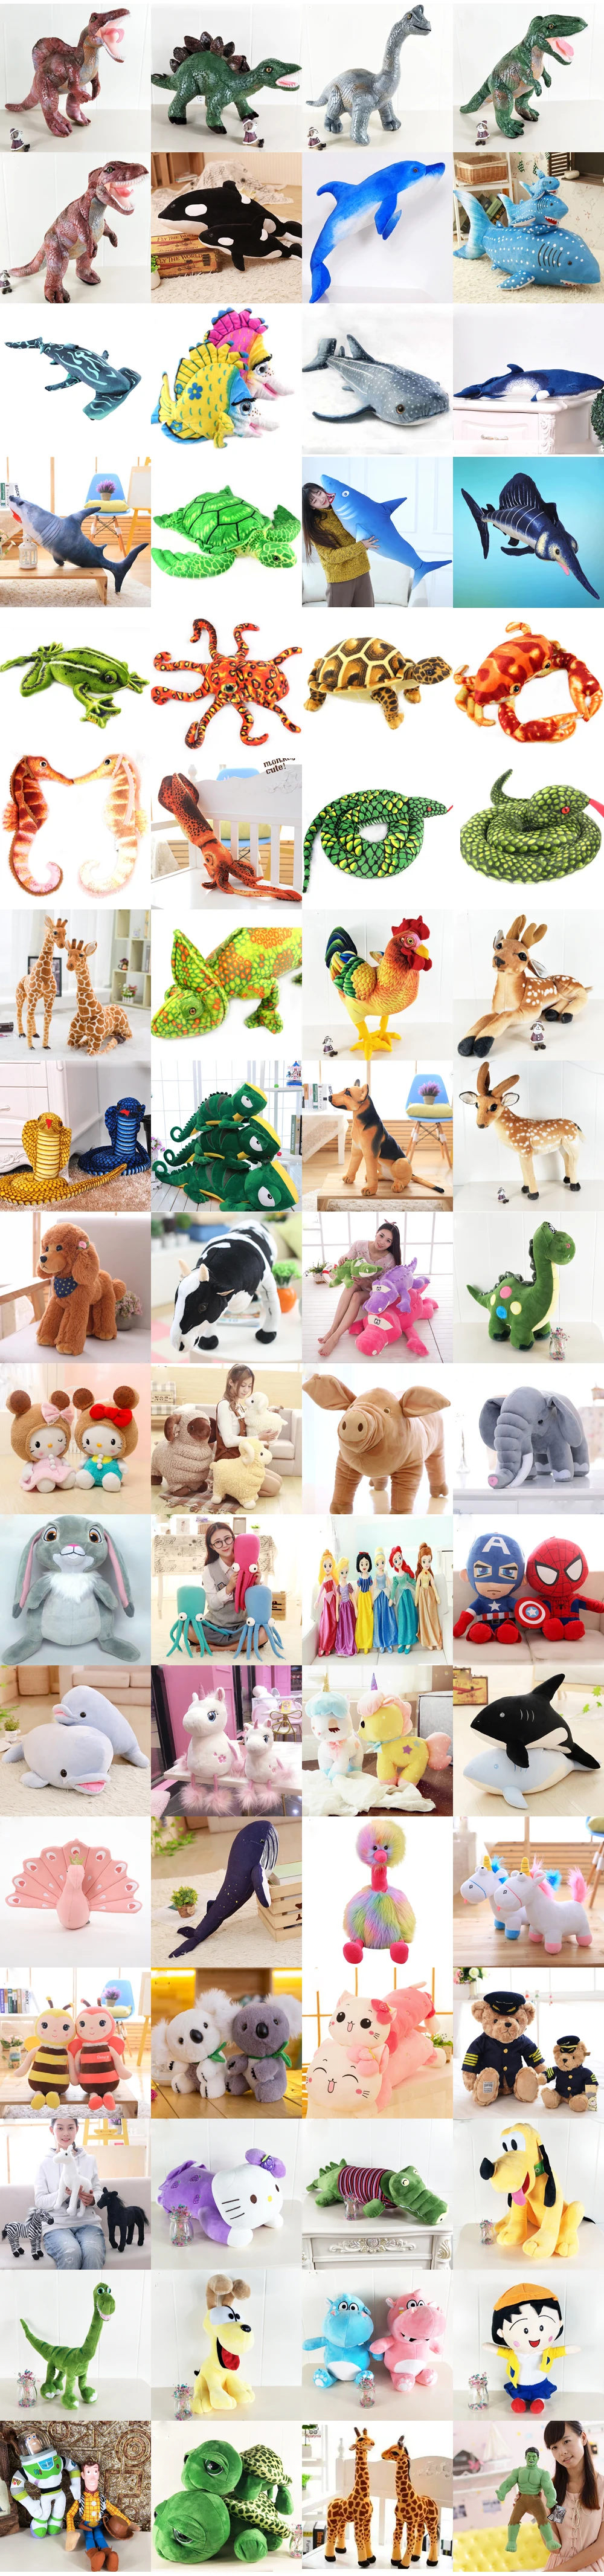 Bolafynia КИТ моделирование детские плюшевые мягкие детские игрушки для малышей на Рождество подарок на день рождения